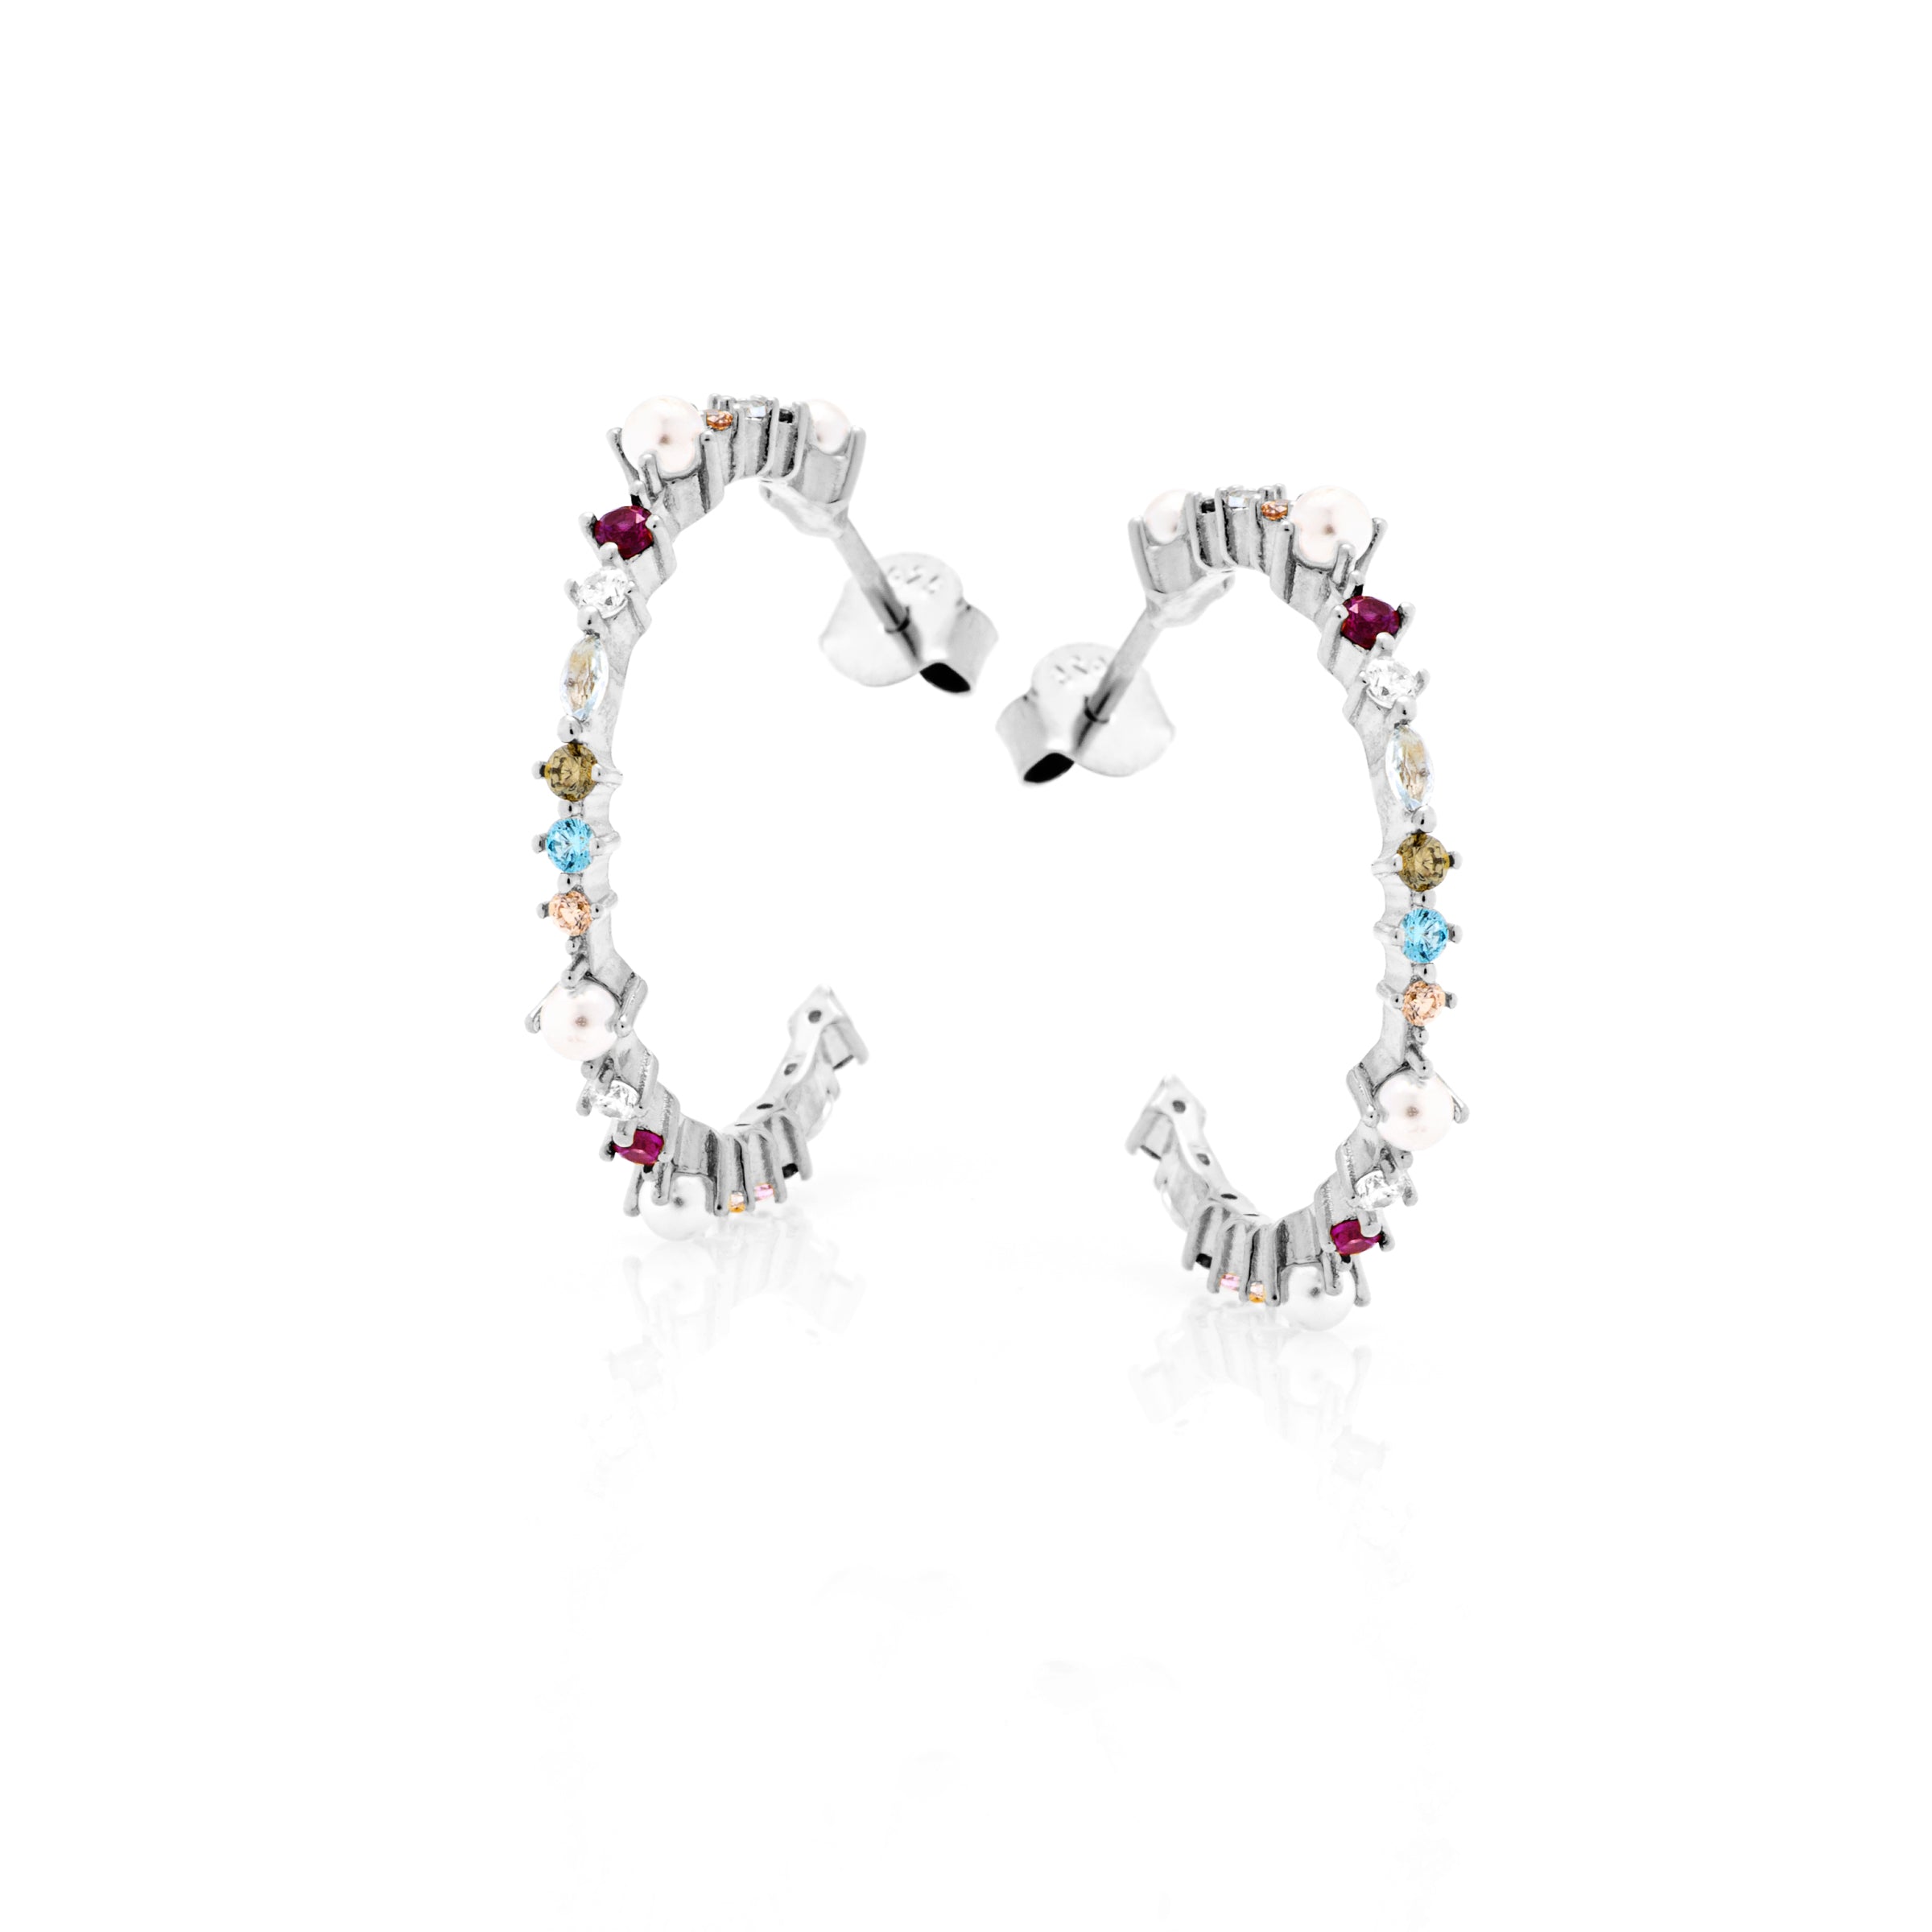 Orecchini Cerchio con Zirconi Colorati e Perle - Orecchini Donna Argento 925